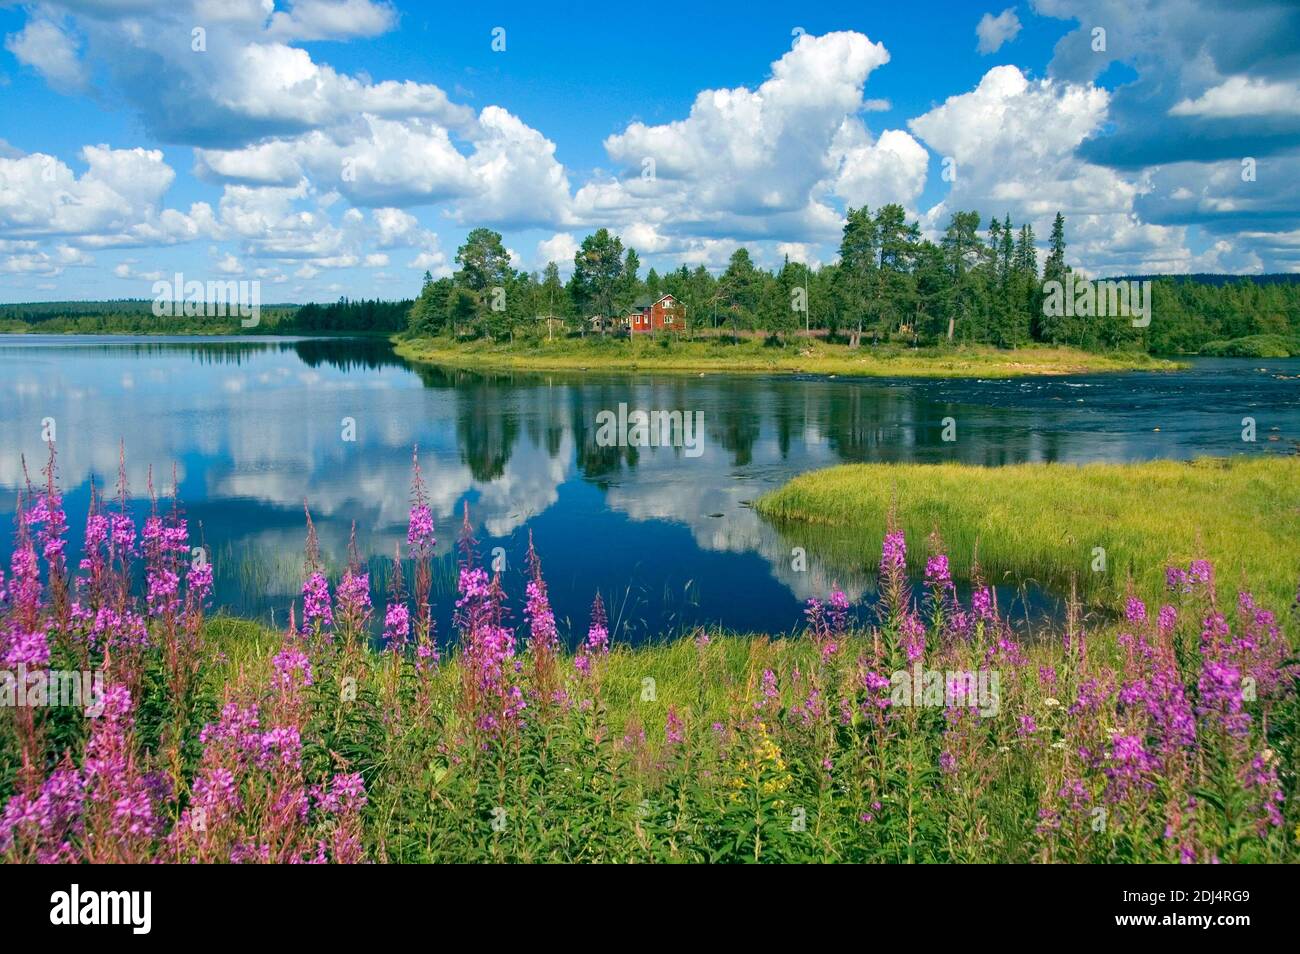 Skandinavien, Finnland, Europa, Lappland, Landschaft im Pallas-Ounas-Tunturi-Nationalpark, Fluss Ounasjoki bei Rattama Stock Photo